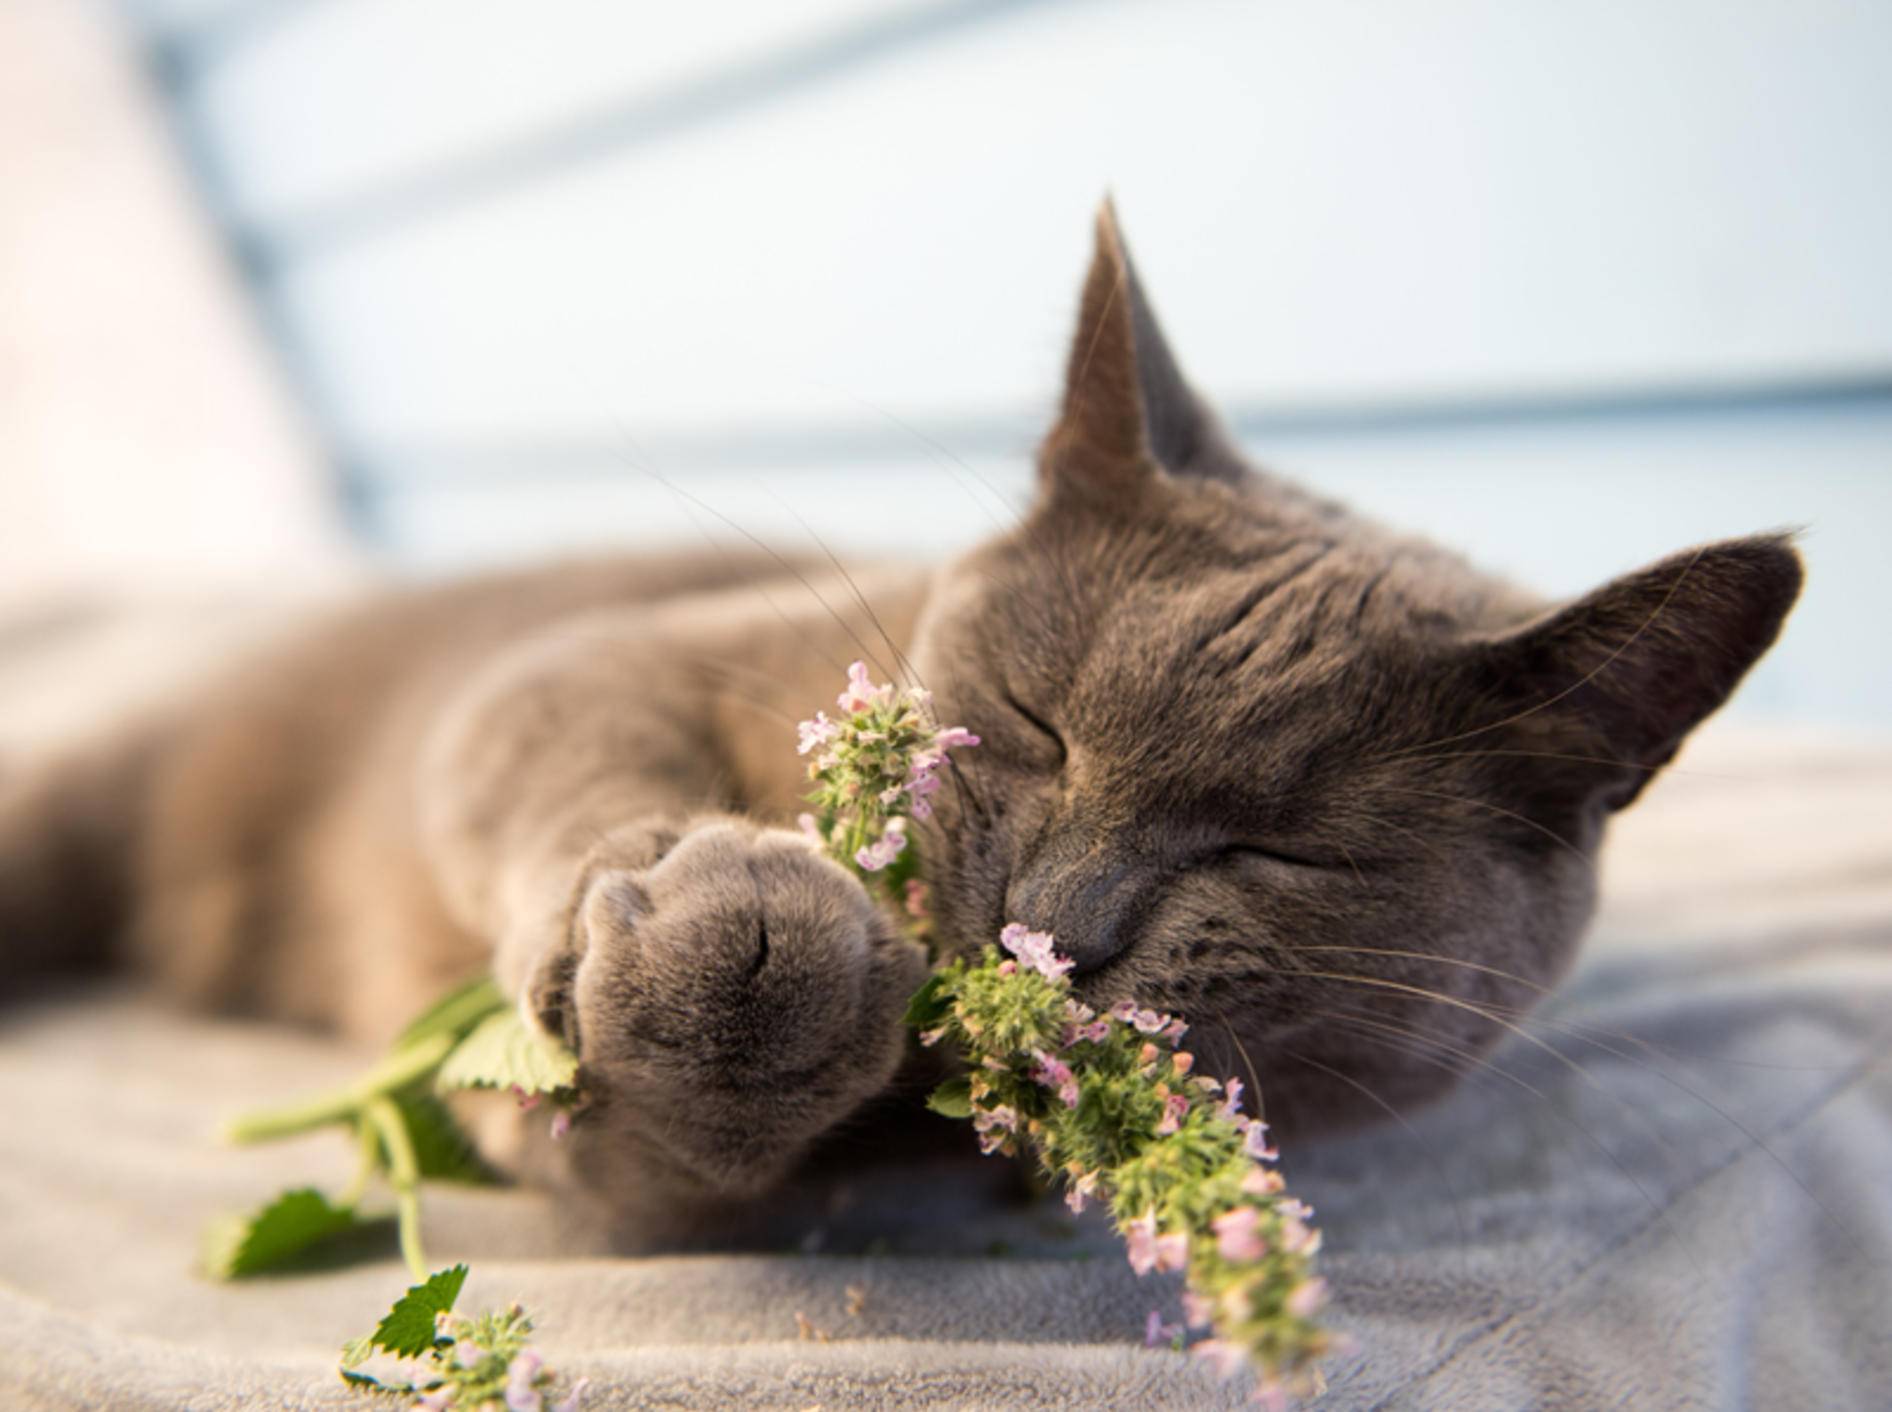 Katzen geraten in einen wahren Rausch, wenn sie Katzenminze genießen - Bild: Shutterstock / Anna Hoychuk